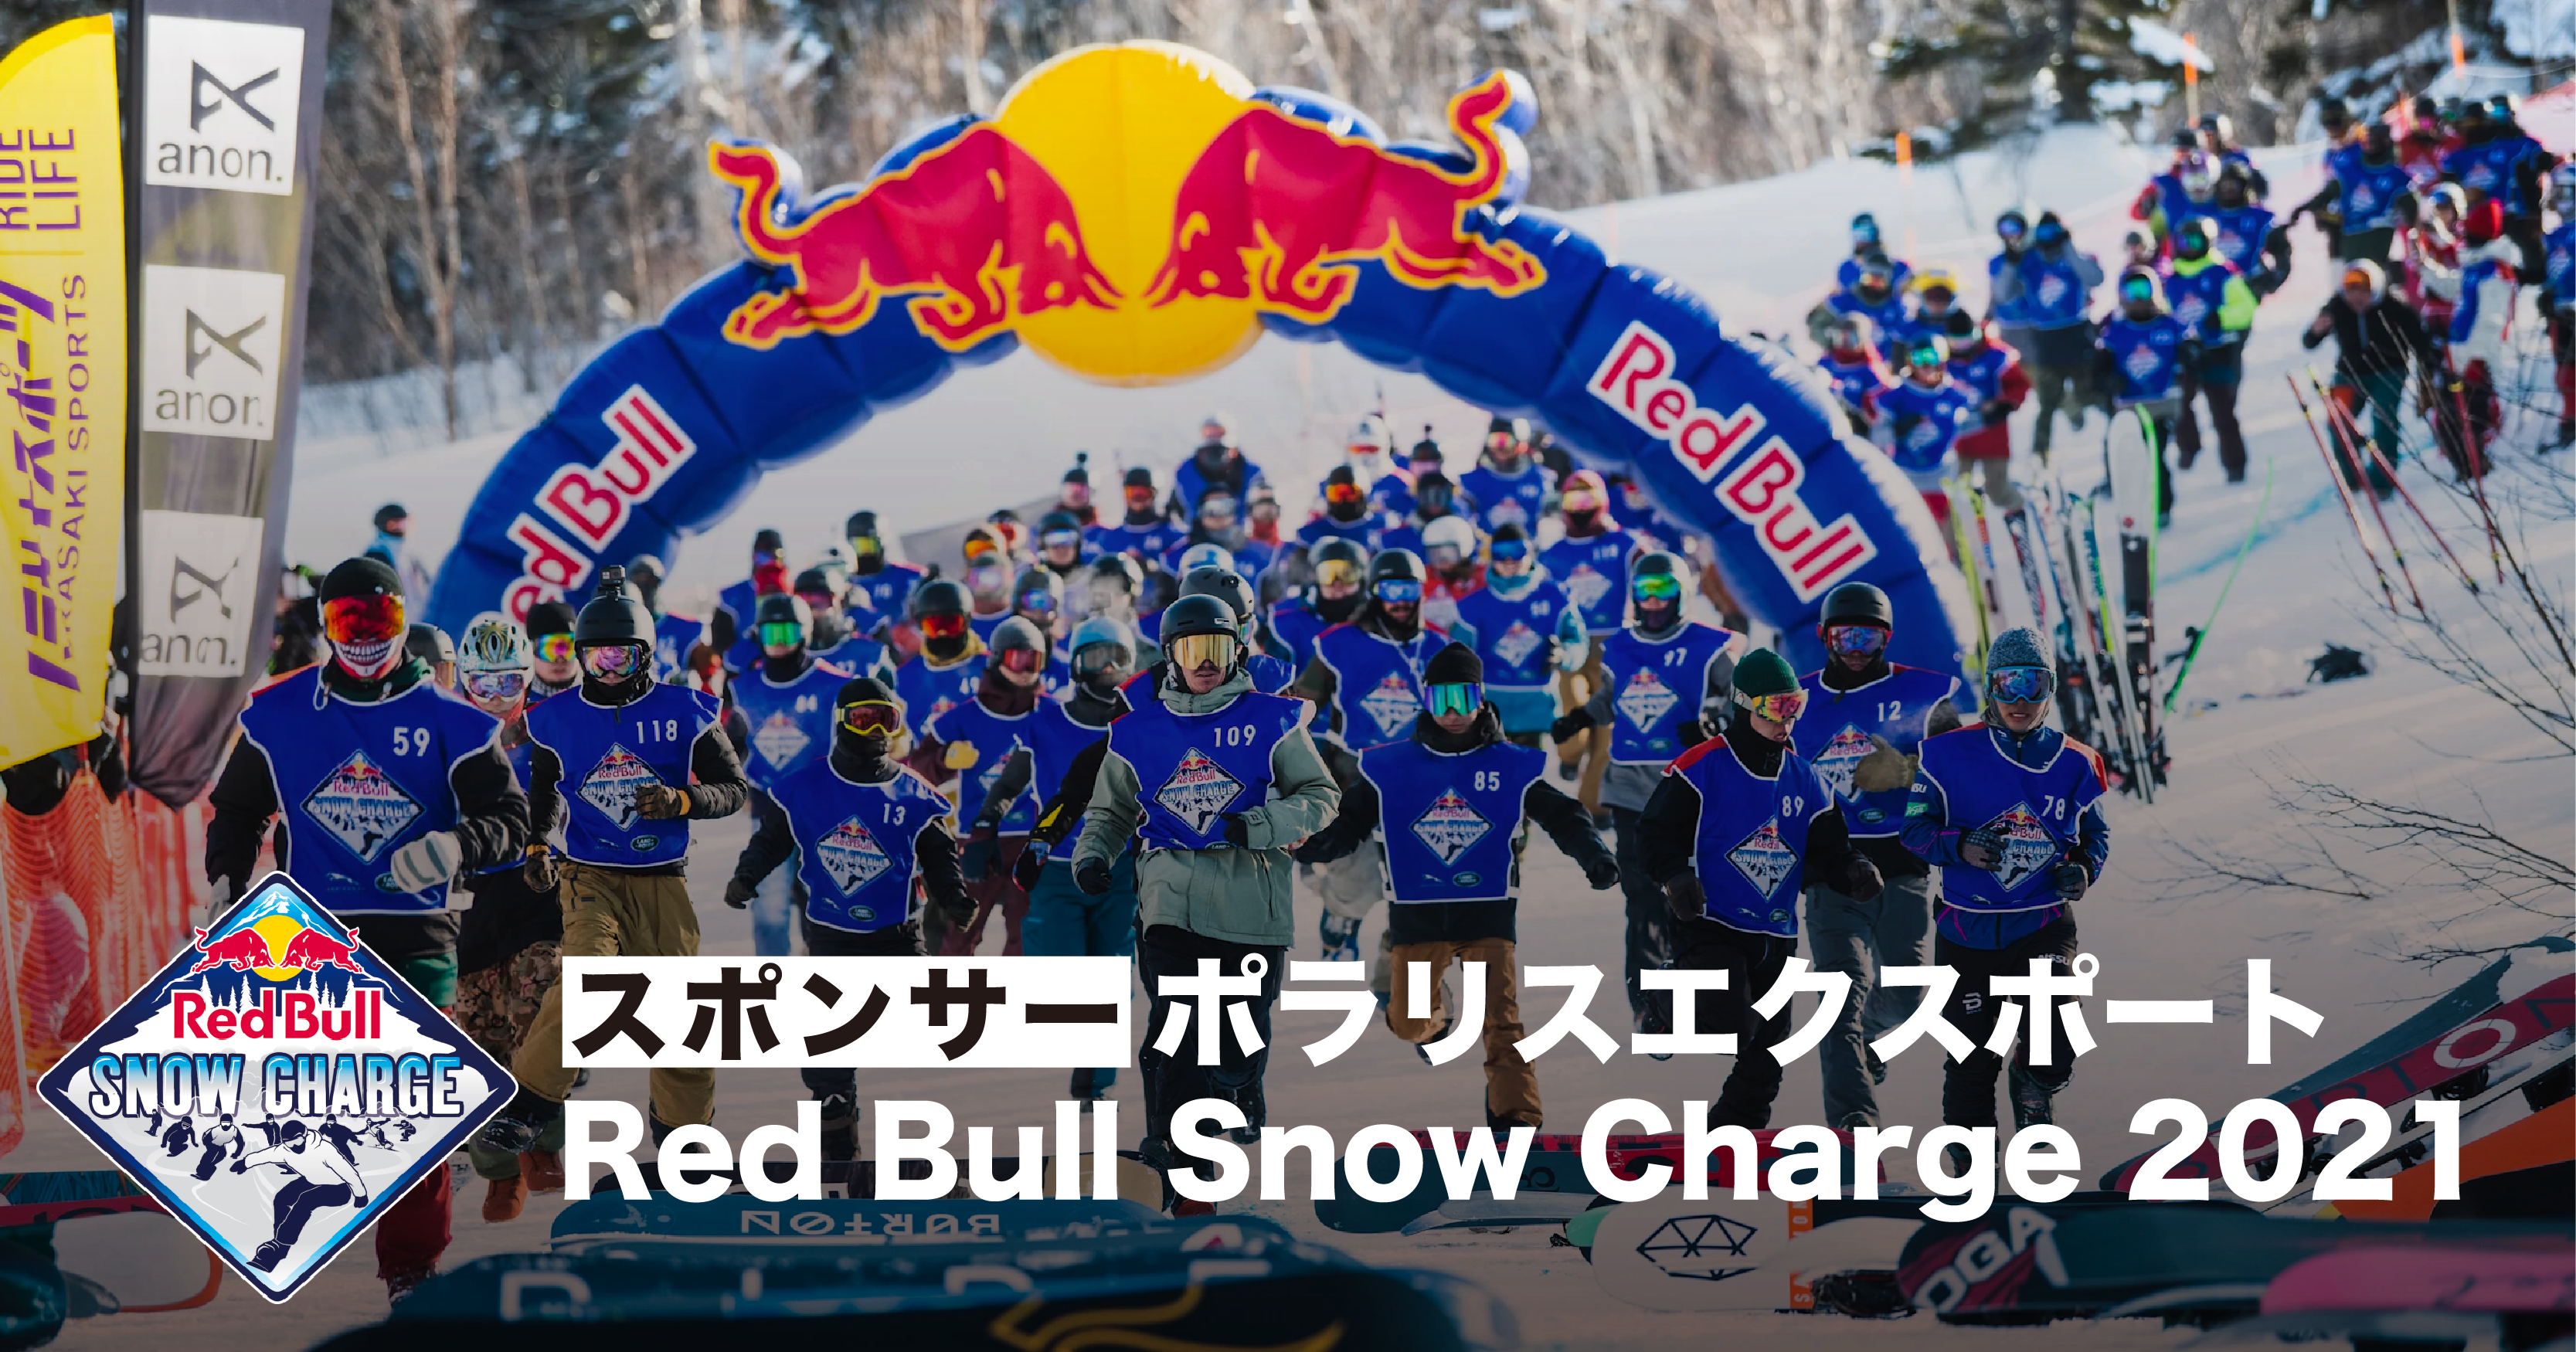 お知らせ〜Red Bull Snow Charge 2021への出資のお知らせ〜